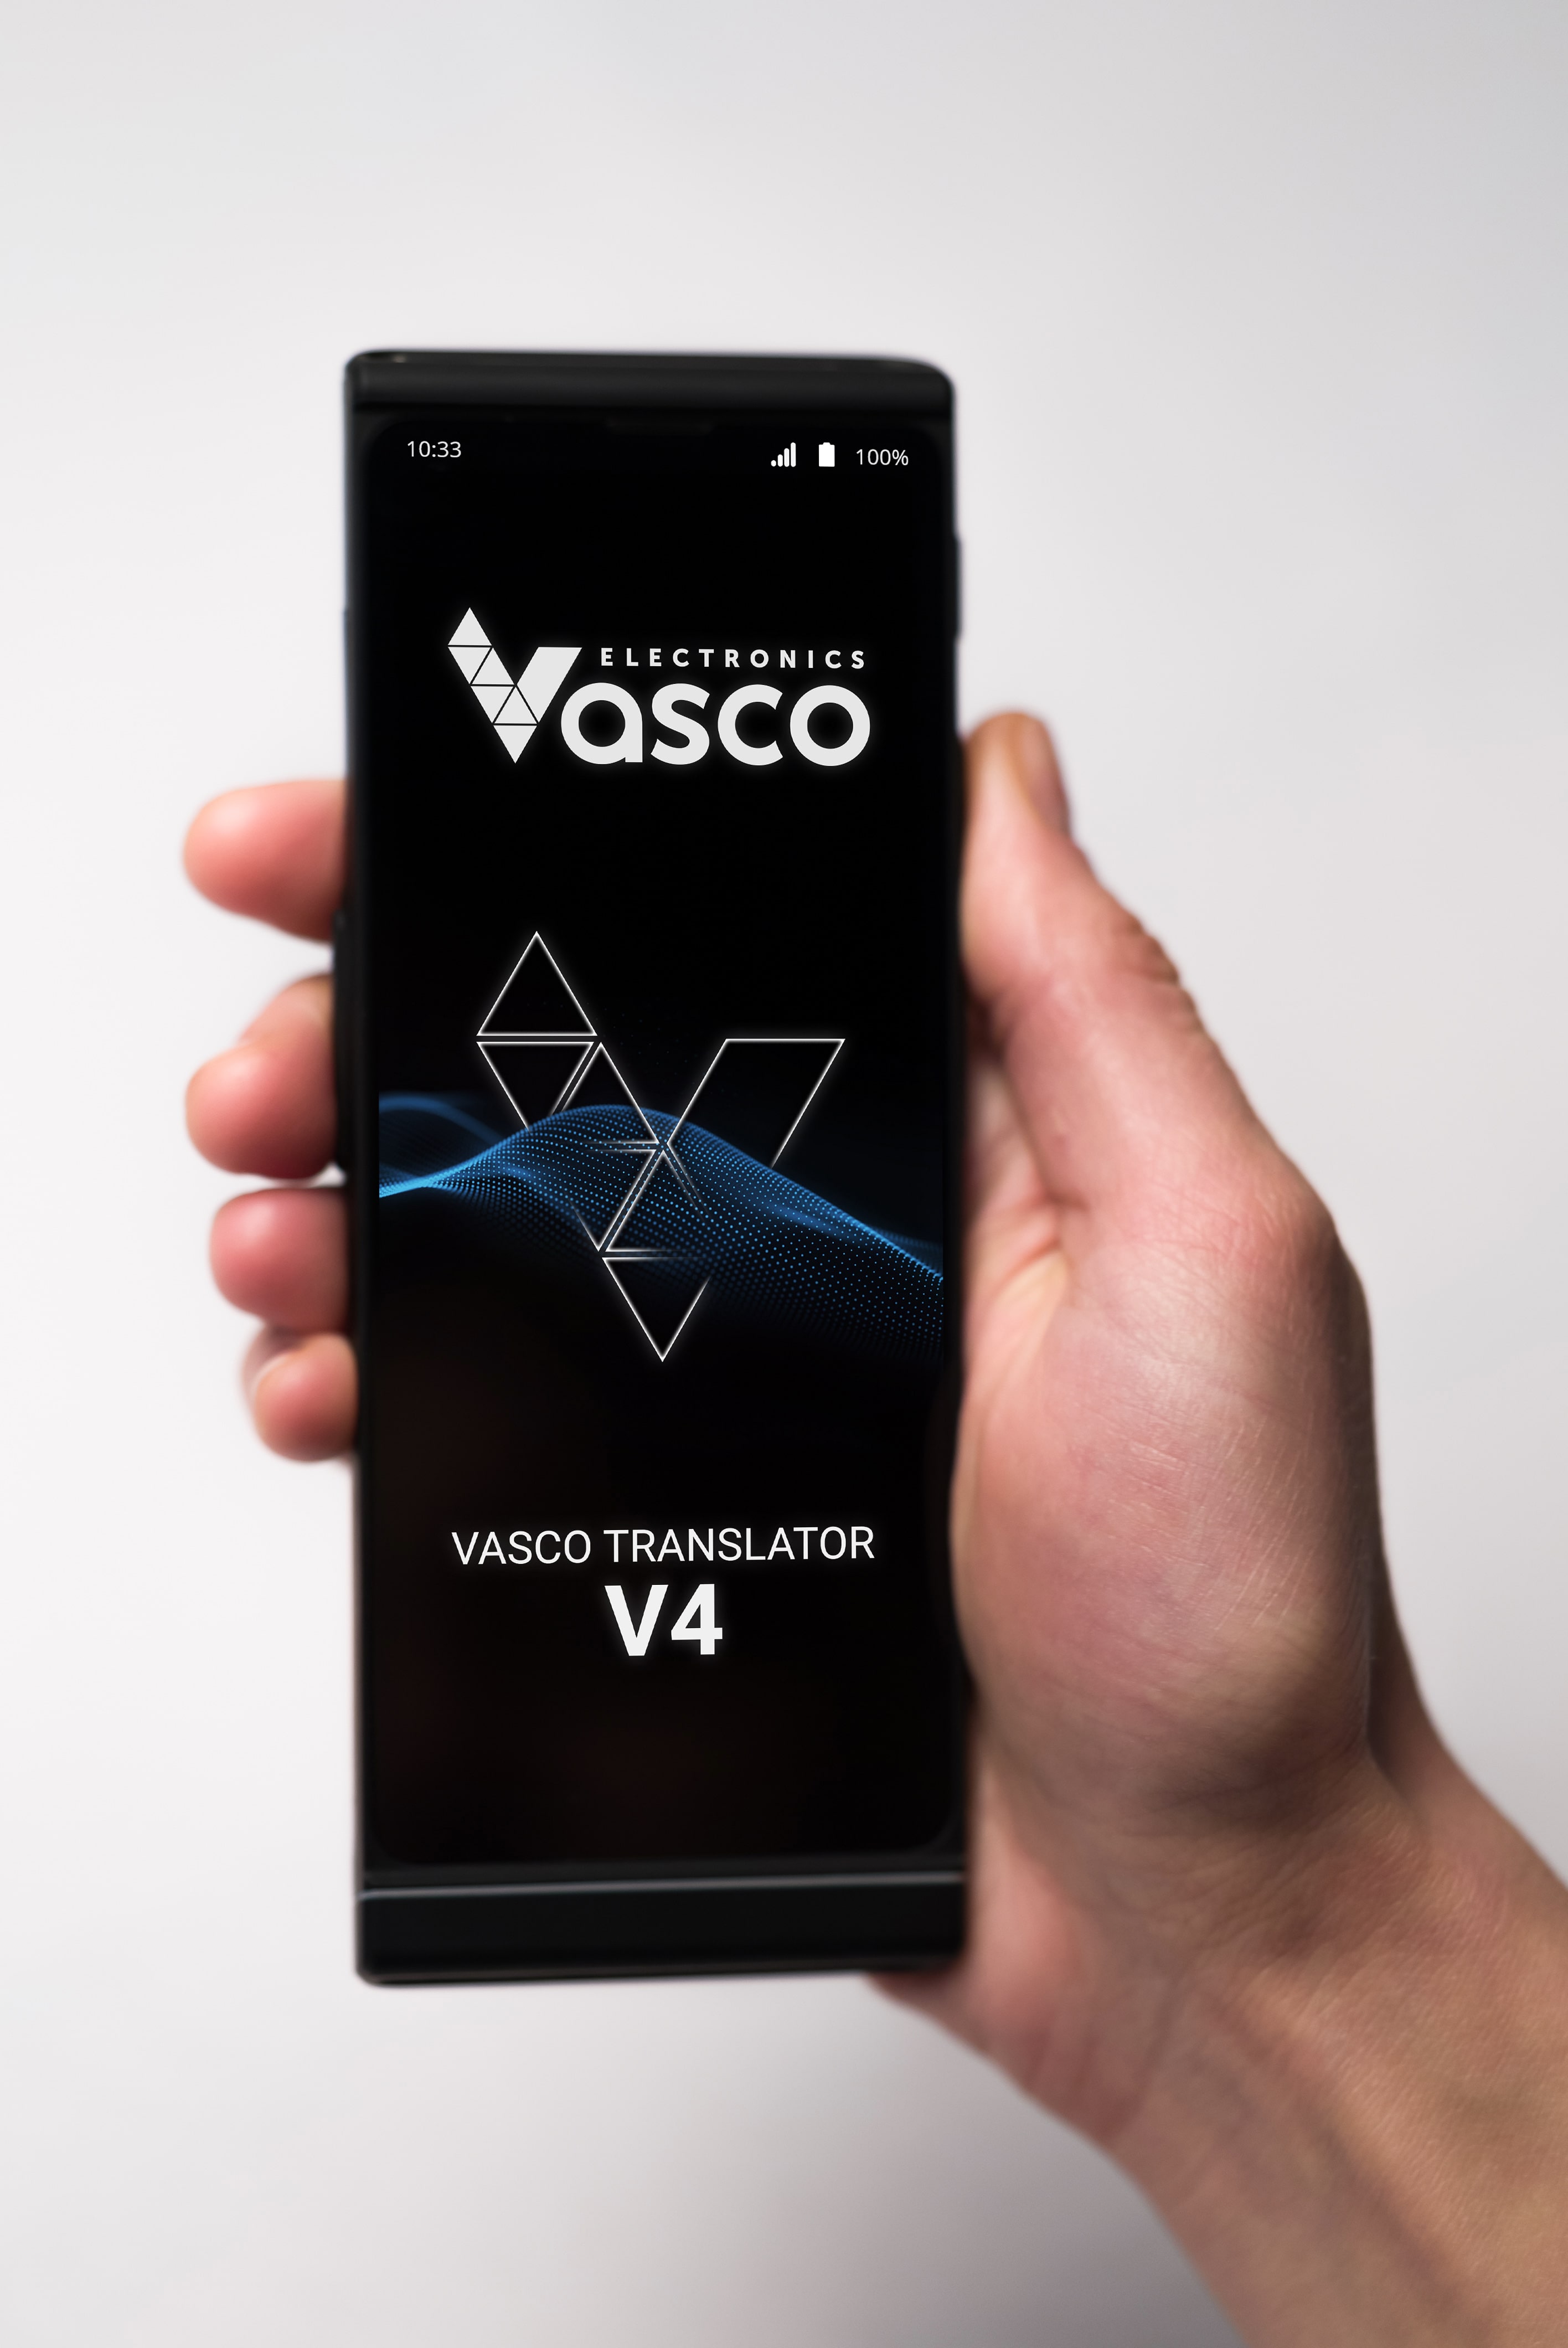 Vasco Electronics gana el Good Design Award 2022 gracias a su último  dispositivo de traducción para viajeros